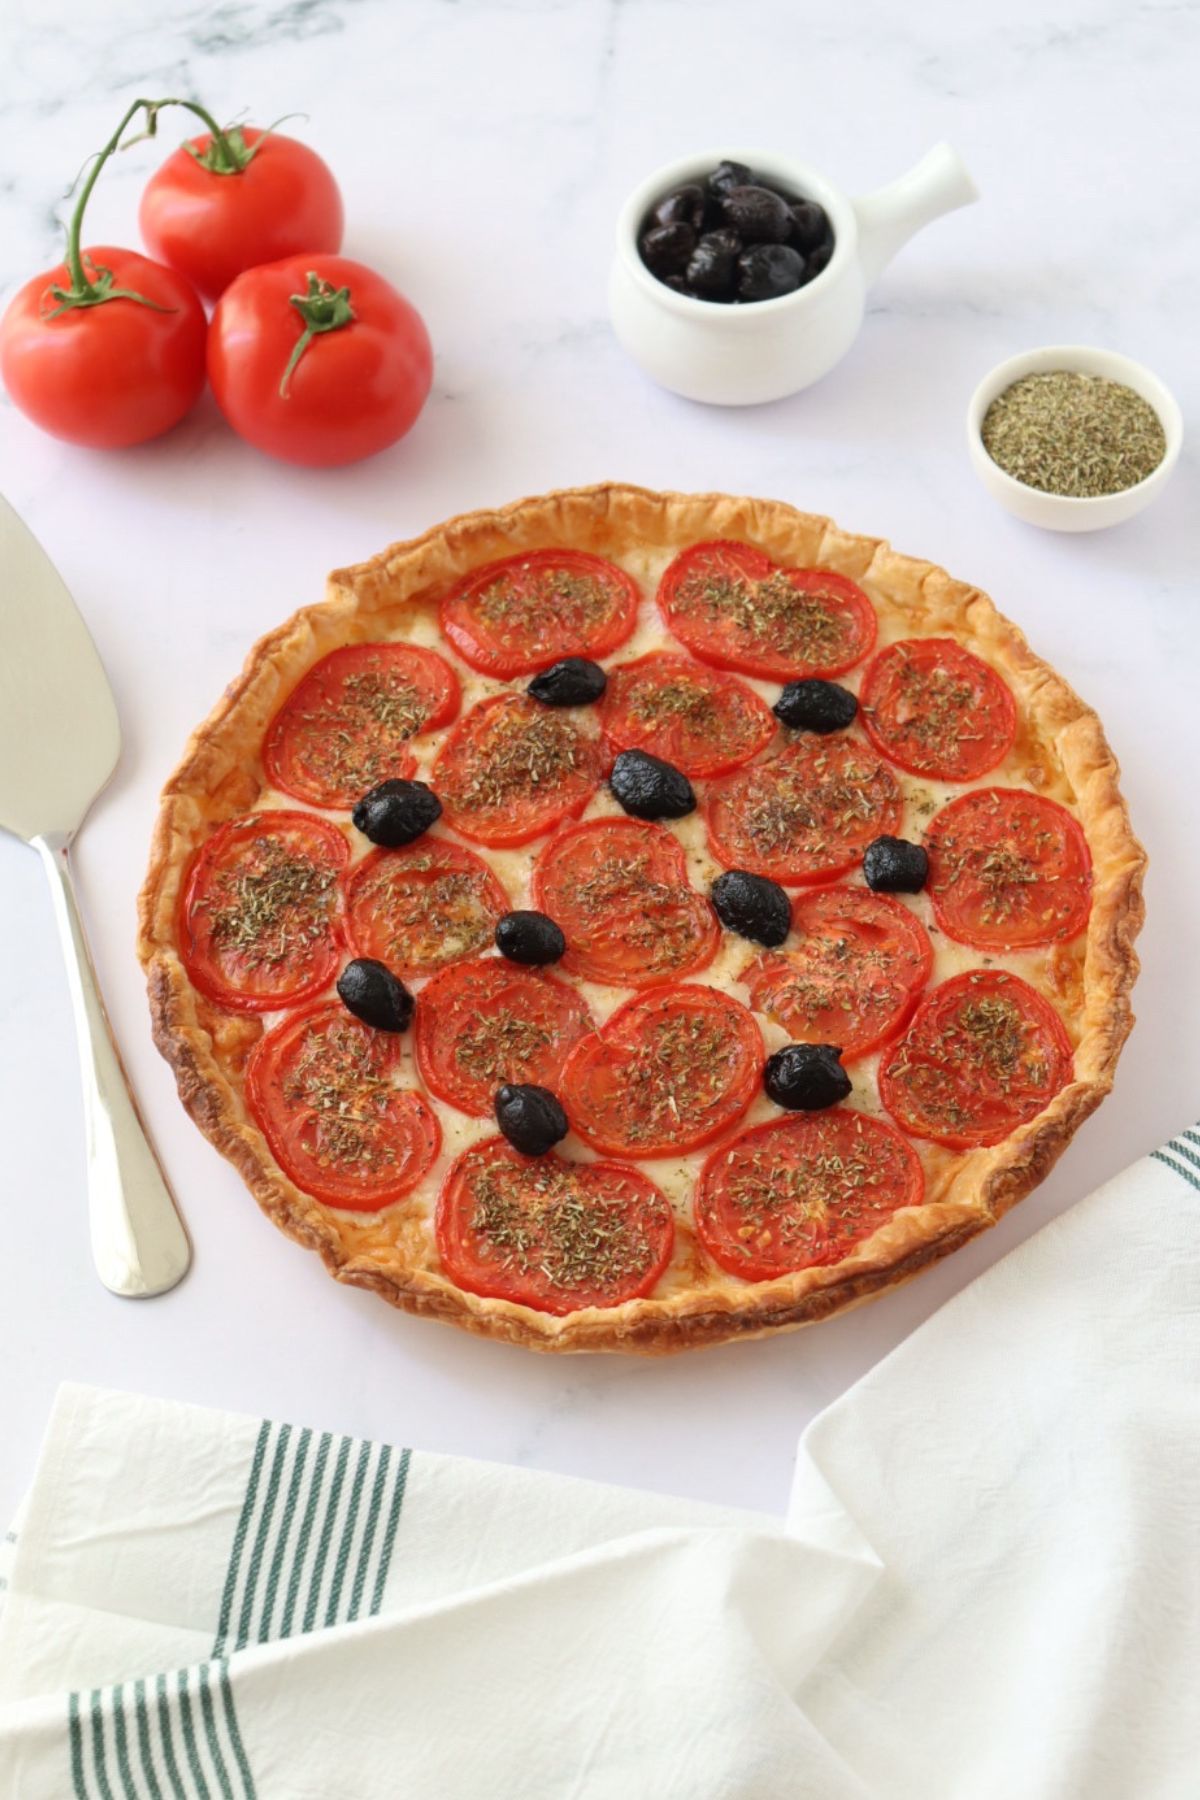 Une tarte à la tomate entourées de 3 tomates, un petit bol d'herbes de Provence, un bol d'olives noires, une pelle à tarte et un torchon.